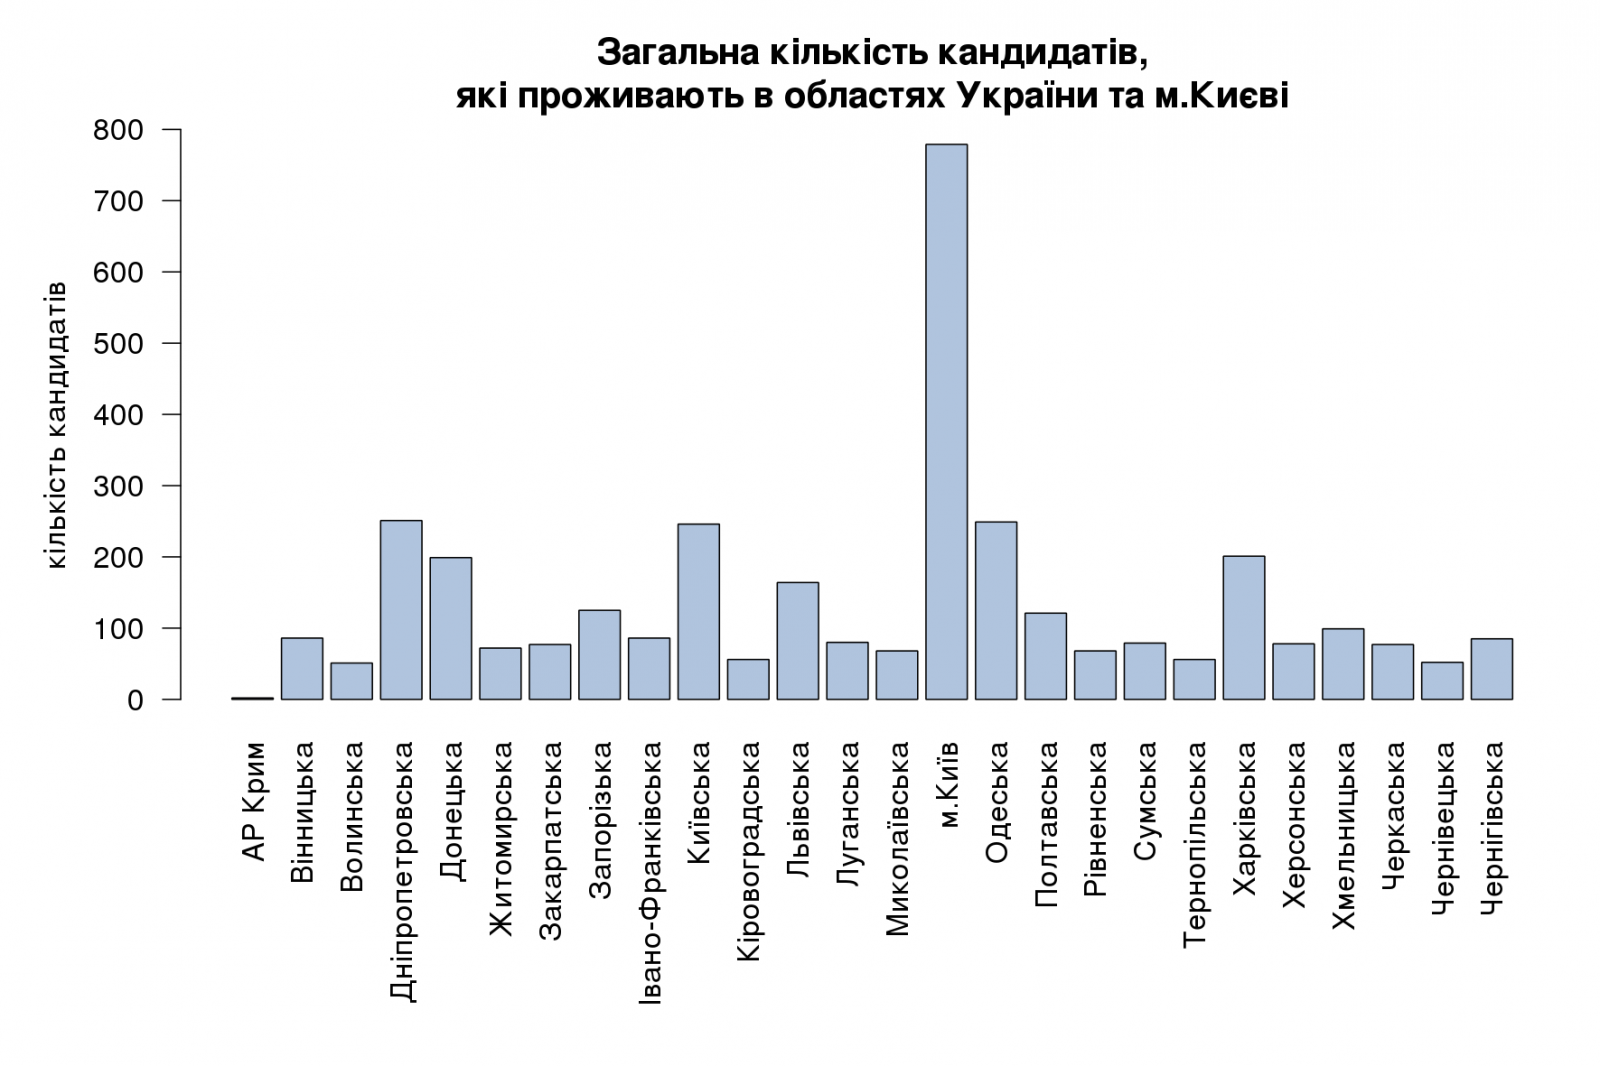 Загальна кількість кандидатів, які проживають в областях України та м.Києві